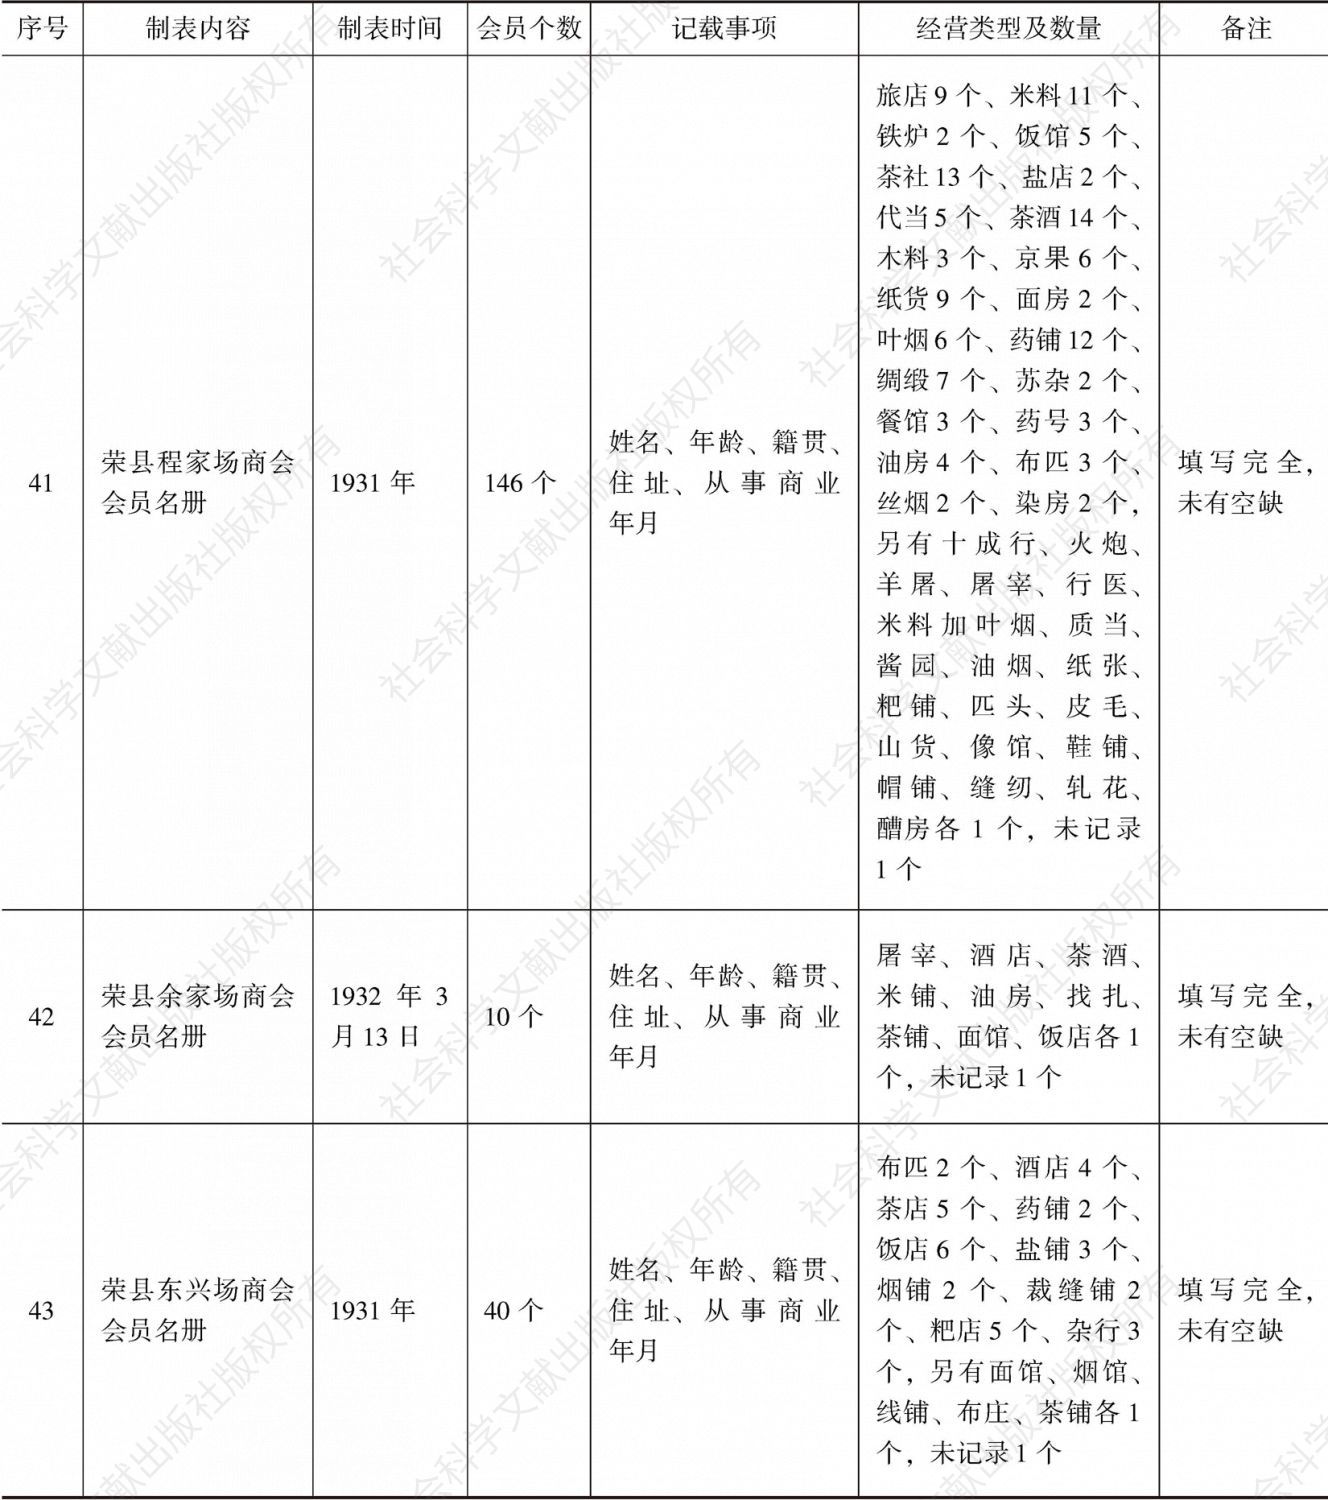 荣县商会事务分所造报名册汇编-续表11